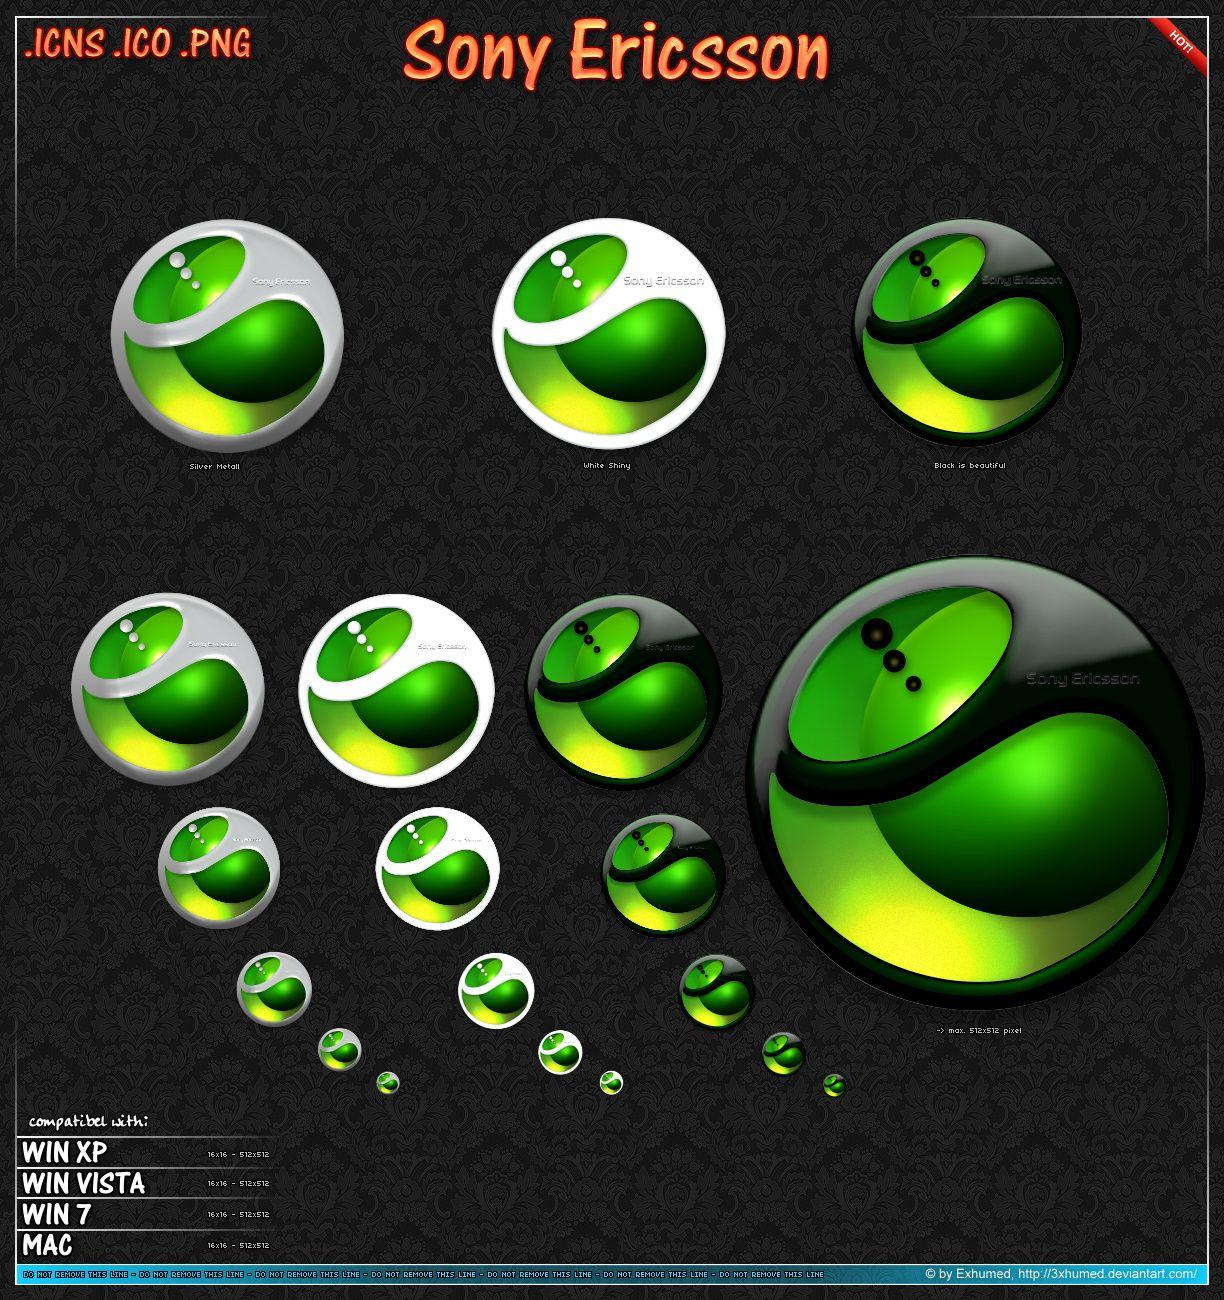 White Ericsson Logo - Sony Ericsson Logo by 3xhumed on DeviantArt